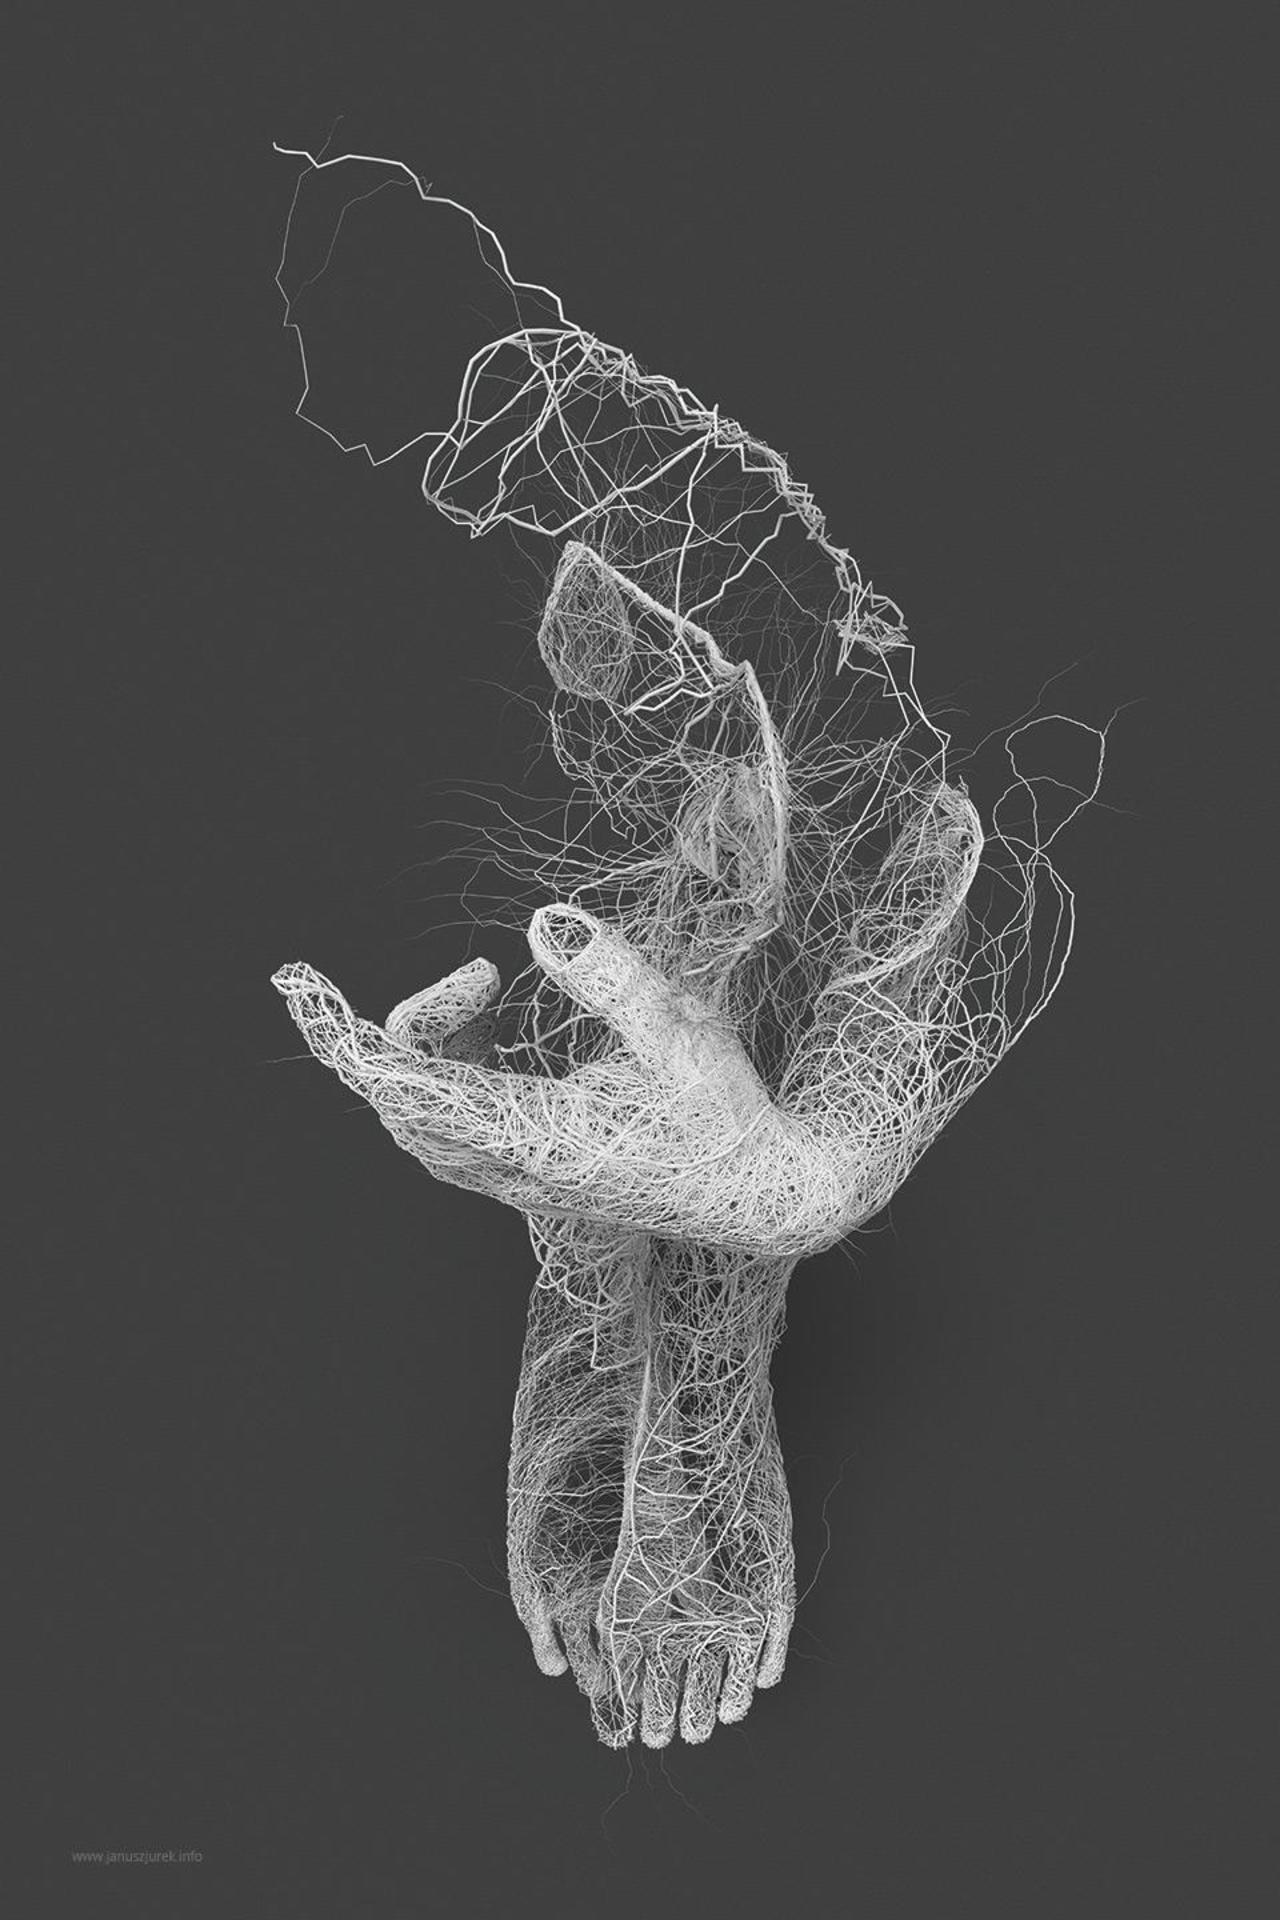 Polish designer & illustrator Janusz Jurek explores generative illustration relating to the human form http://t.co/D9dwFj1I6d